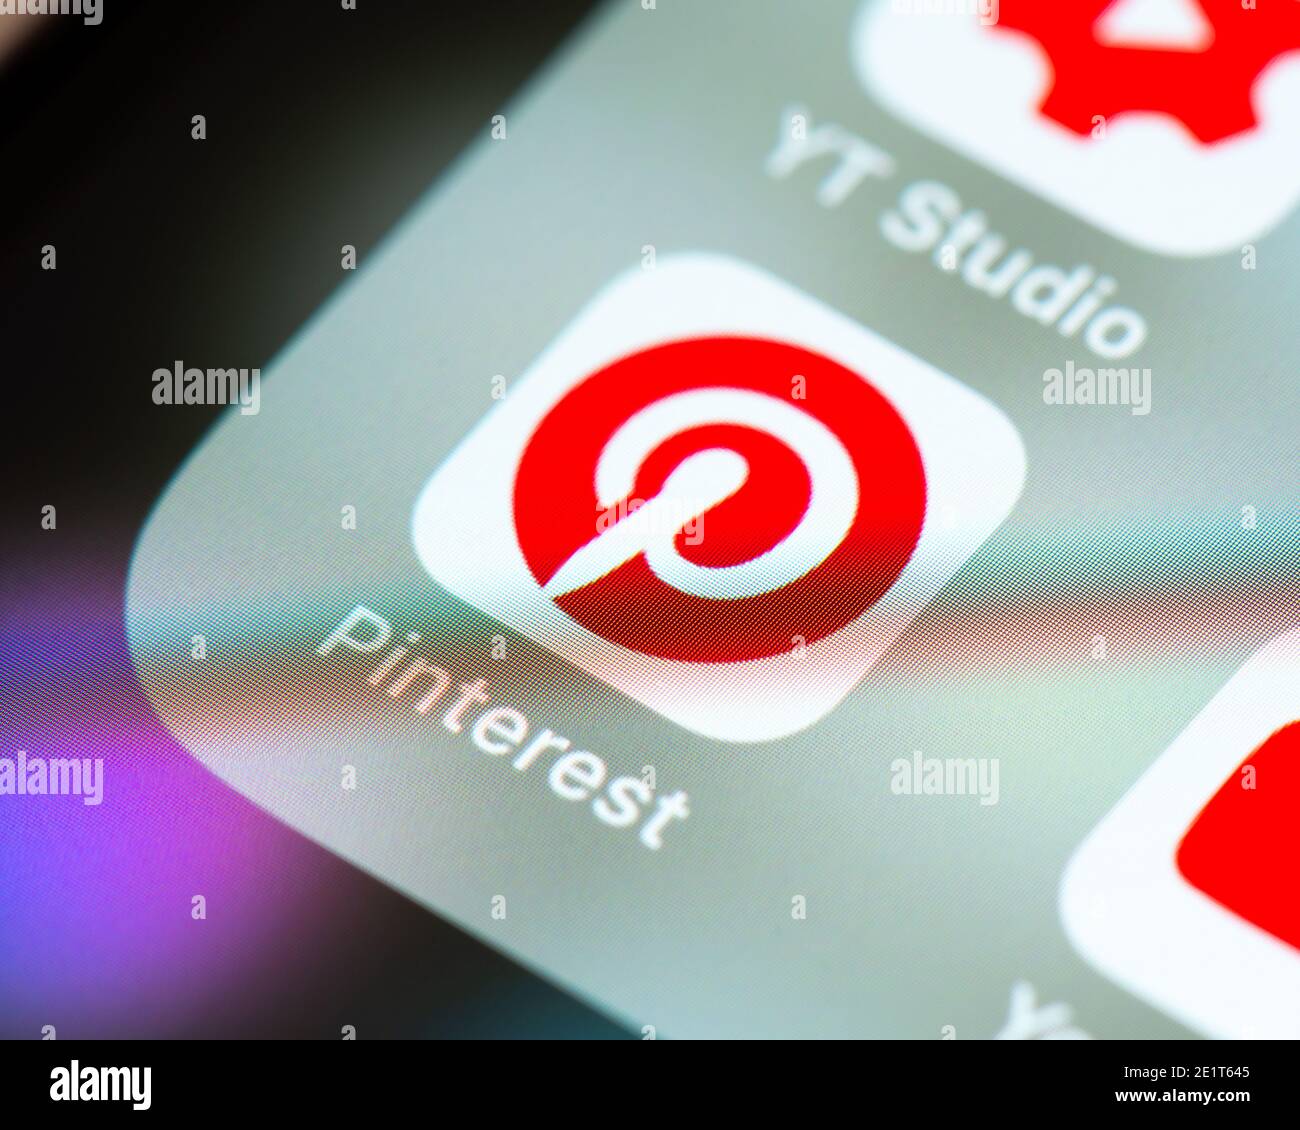 Pinterest-App-Symbol auf dem Apple iPhone-Bildschirm. Pinterest ist ein amerikanischer Image-Sharing- und Social-Media-Service. Stockfoto